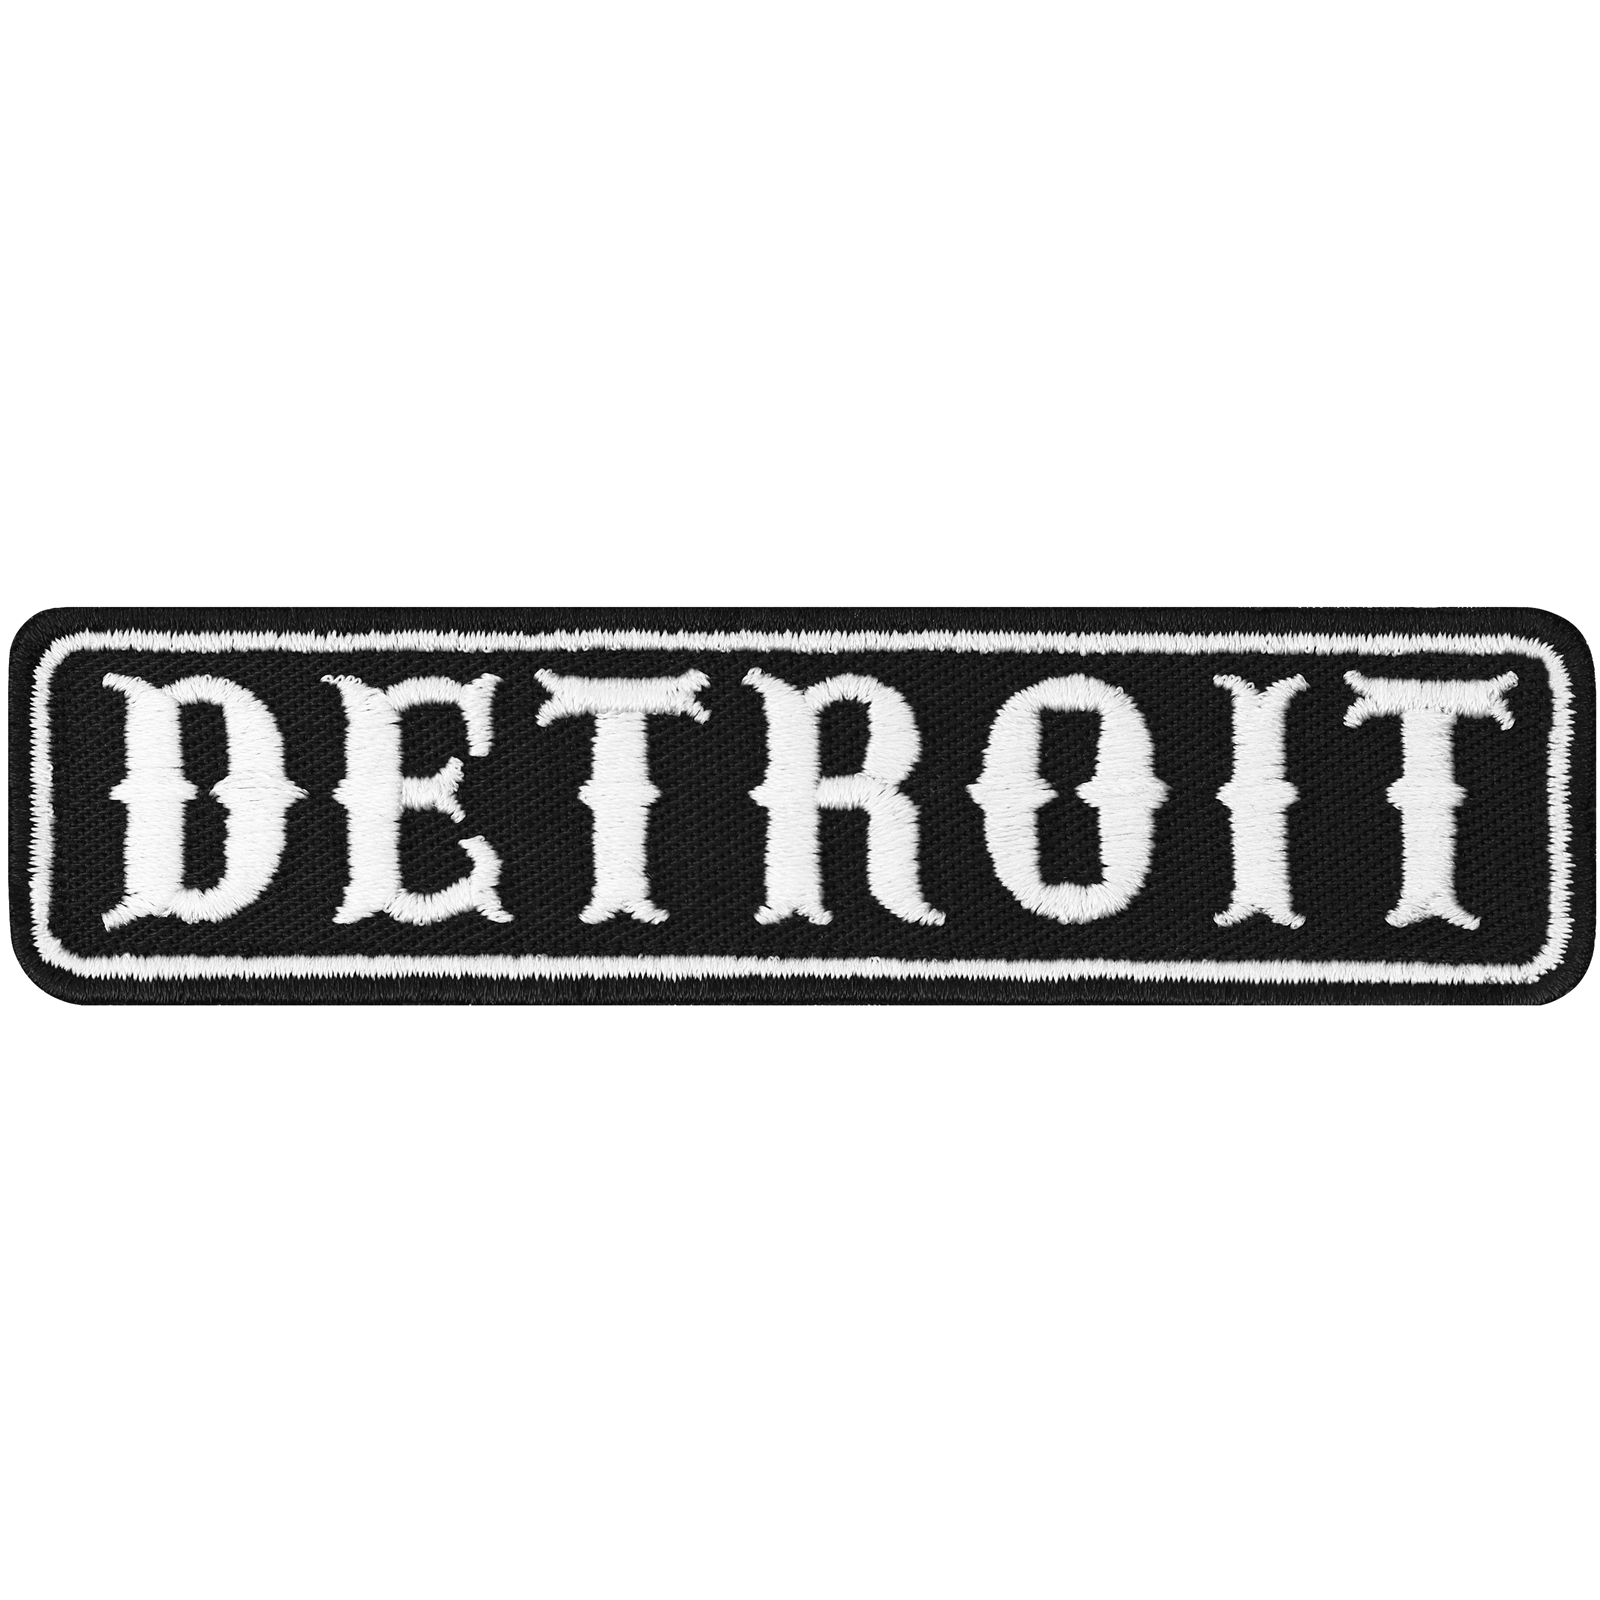 Detroit - Patch